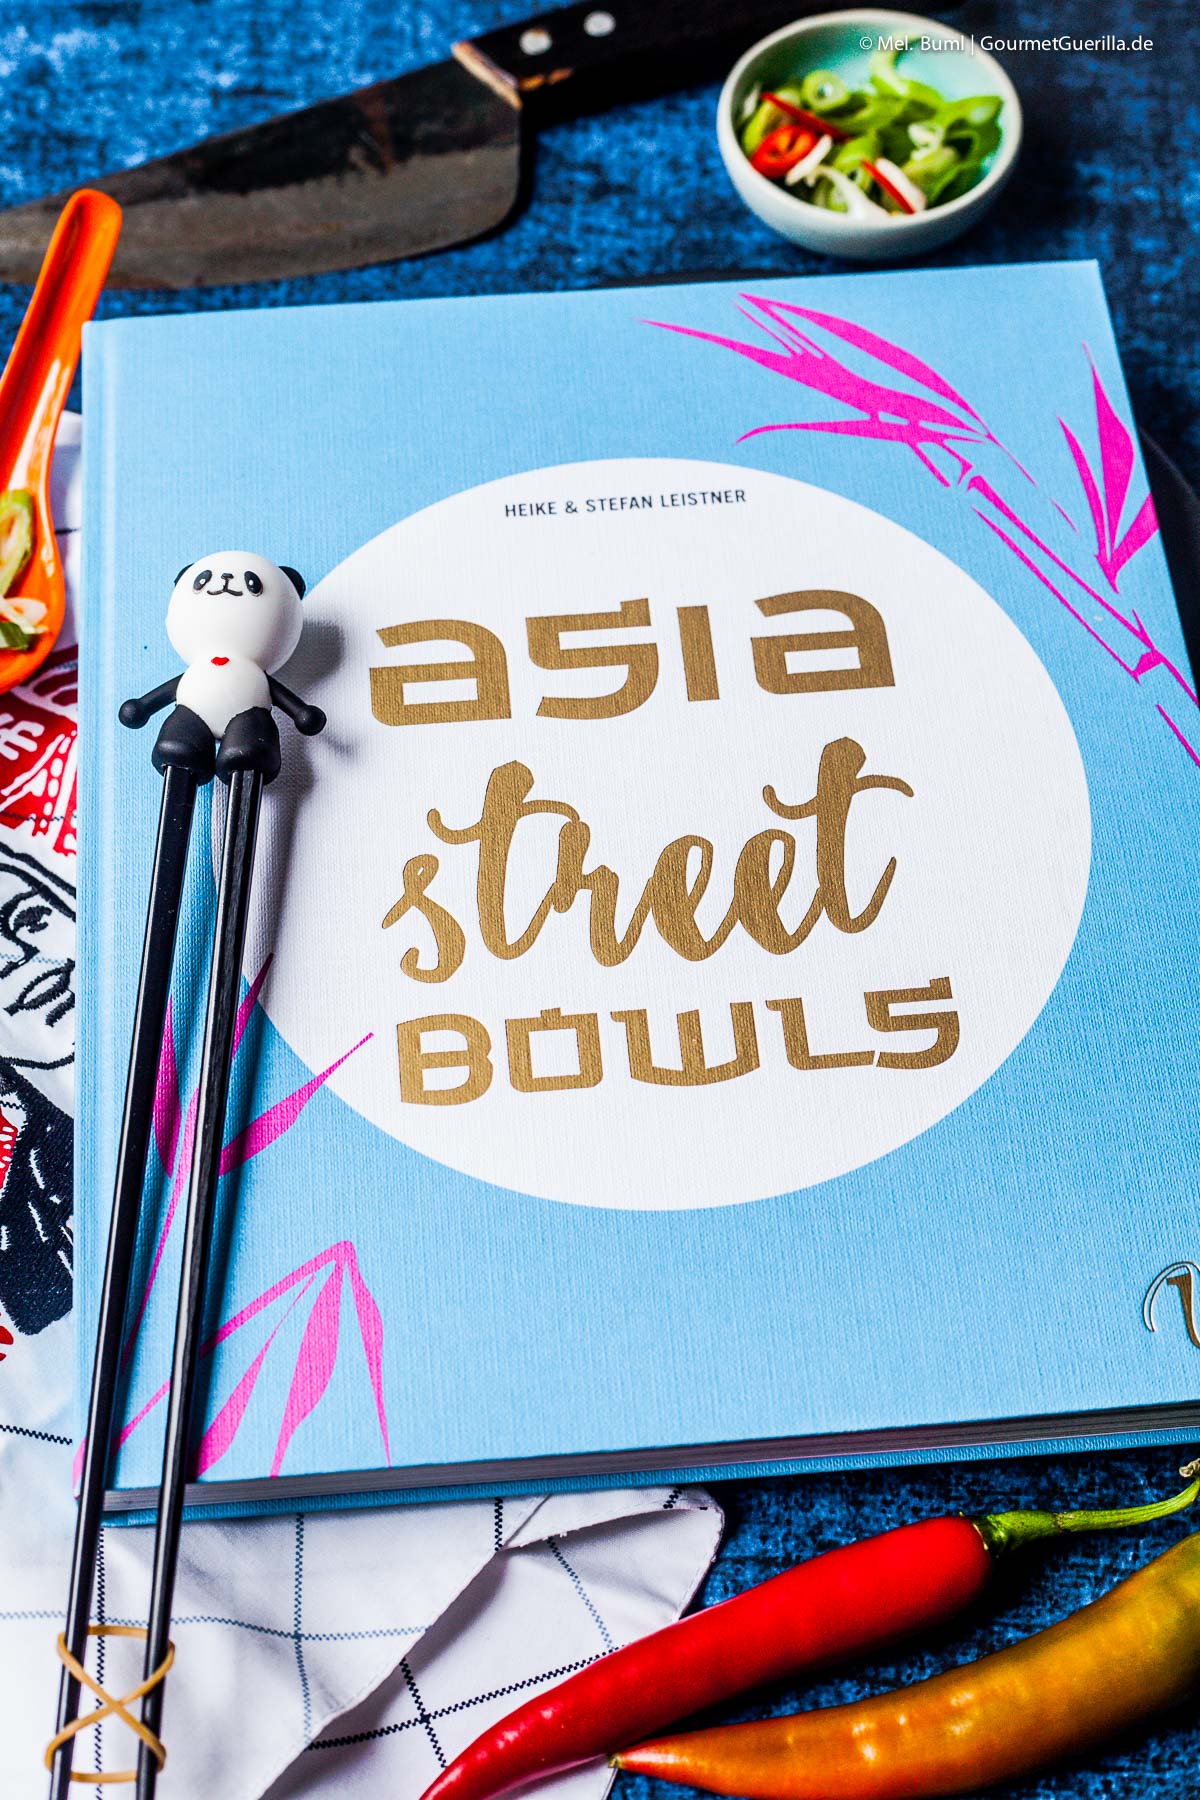 Das Kochbuch Asia Street Bowls | GourmetGuerilla.de